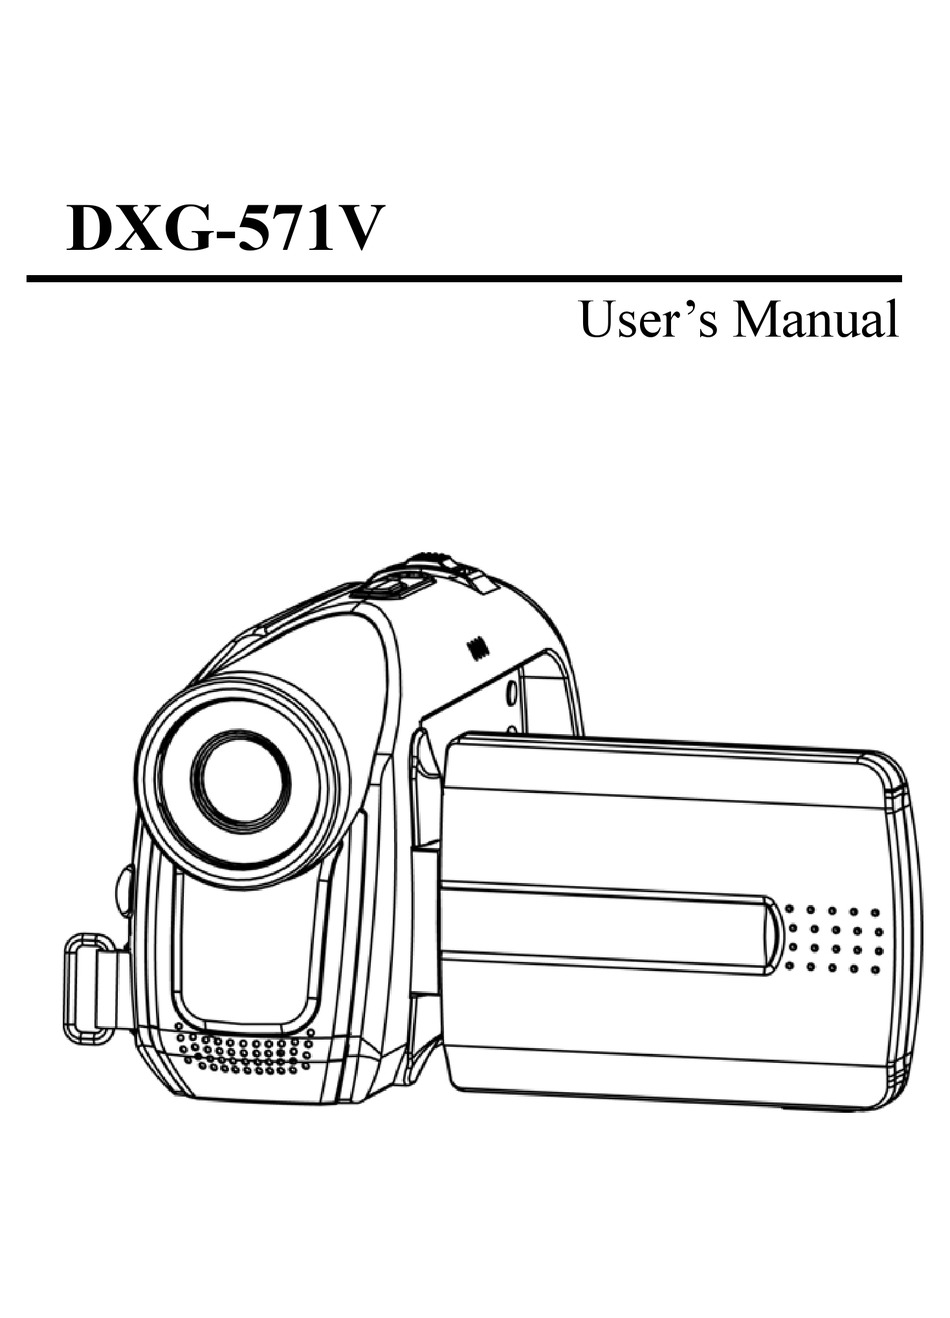 DXG -571V USER MANUAL Pdf Download | ManualsLib